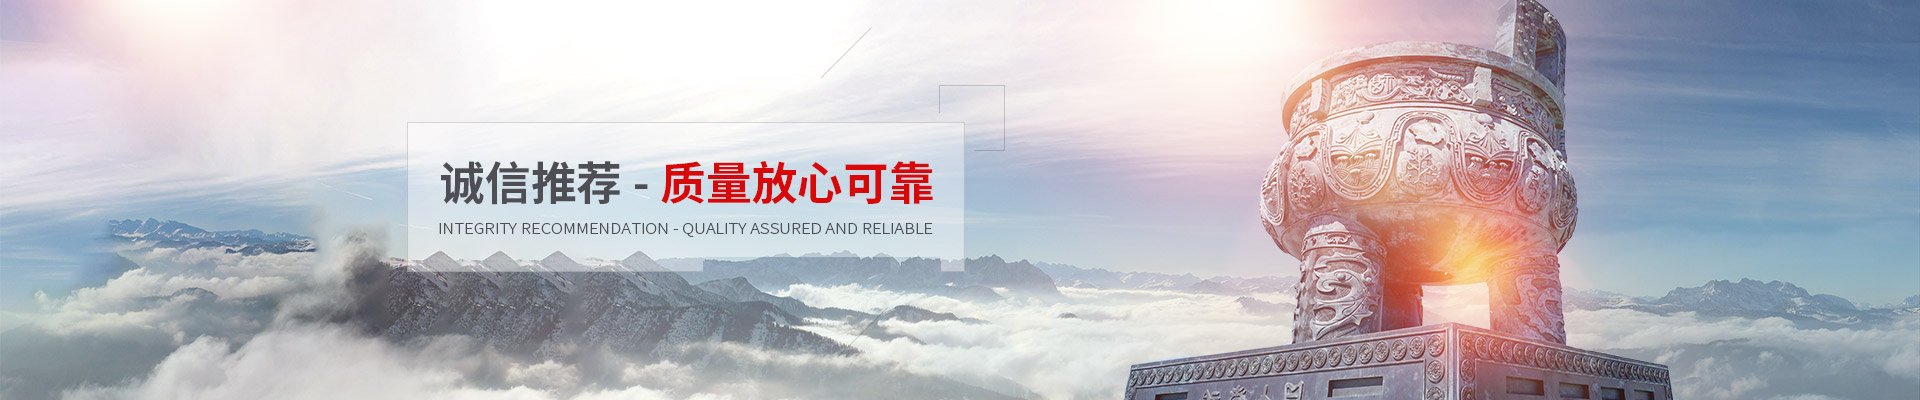 上海科姆特自动化控制技术有限公司公司介绍